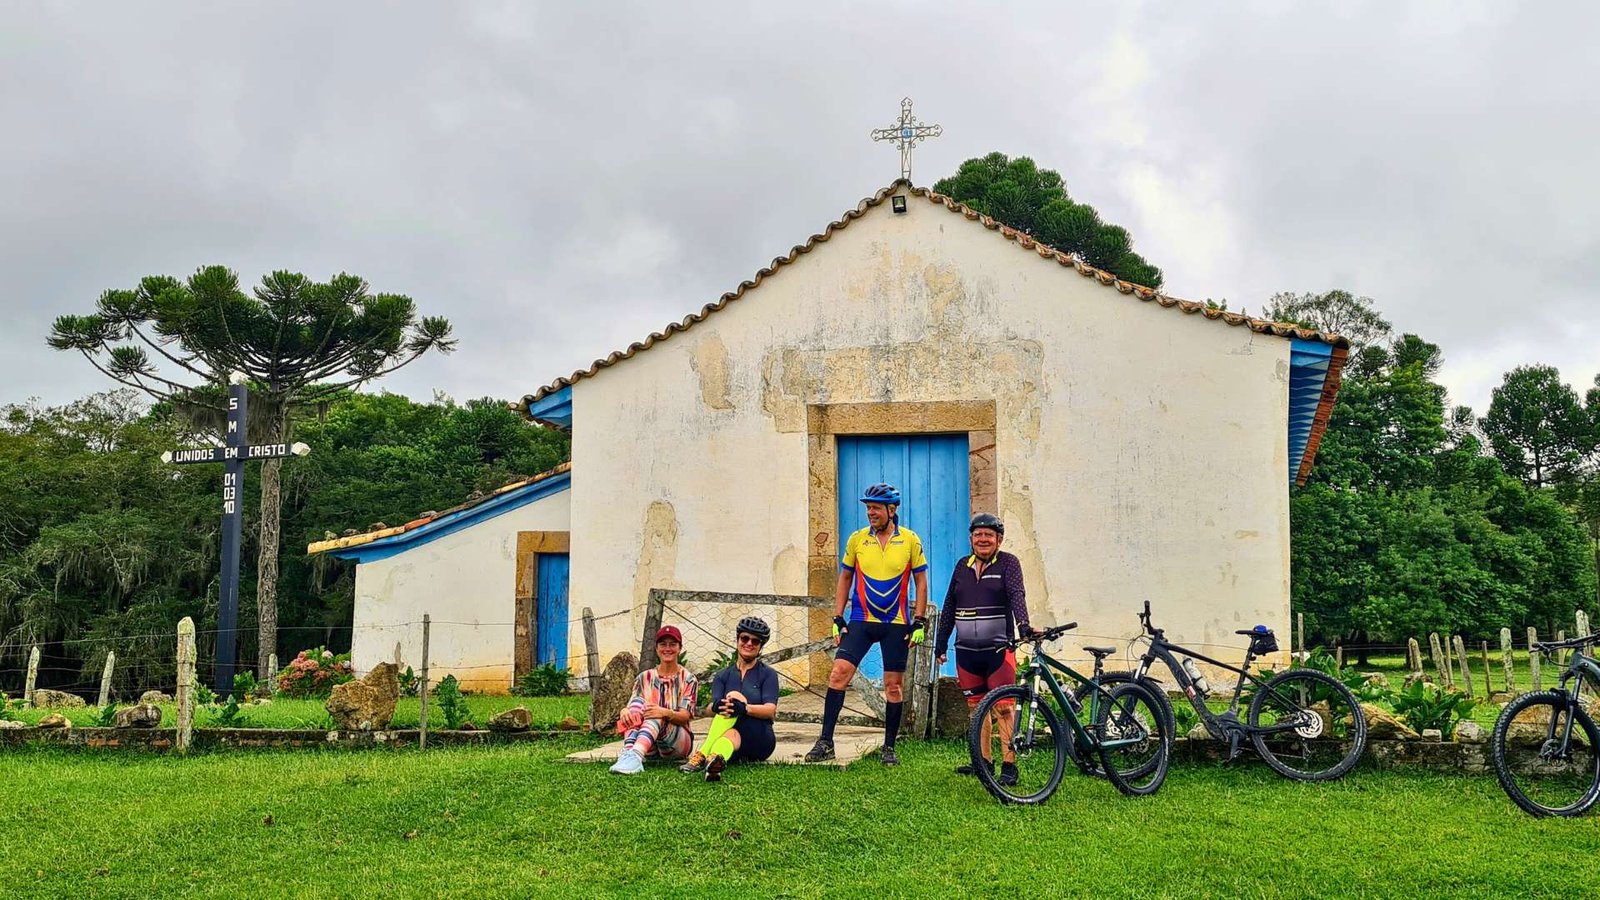 Cicloturistas na Igreja do Tamanduá, preservando a tradição e a cultural na região sul do Brasil.